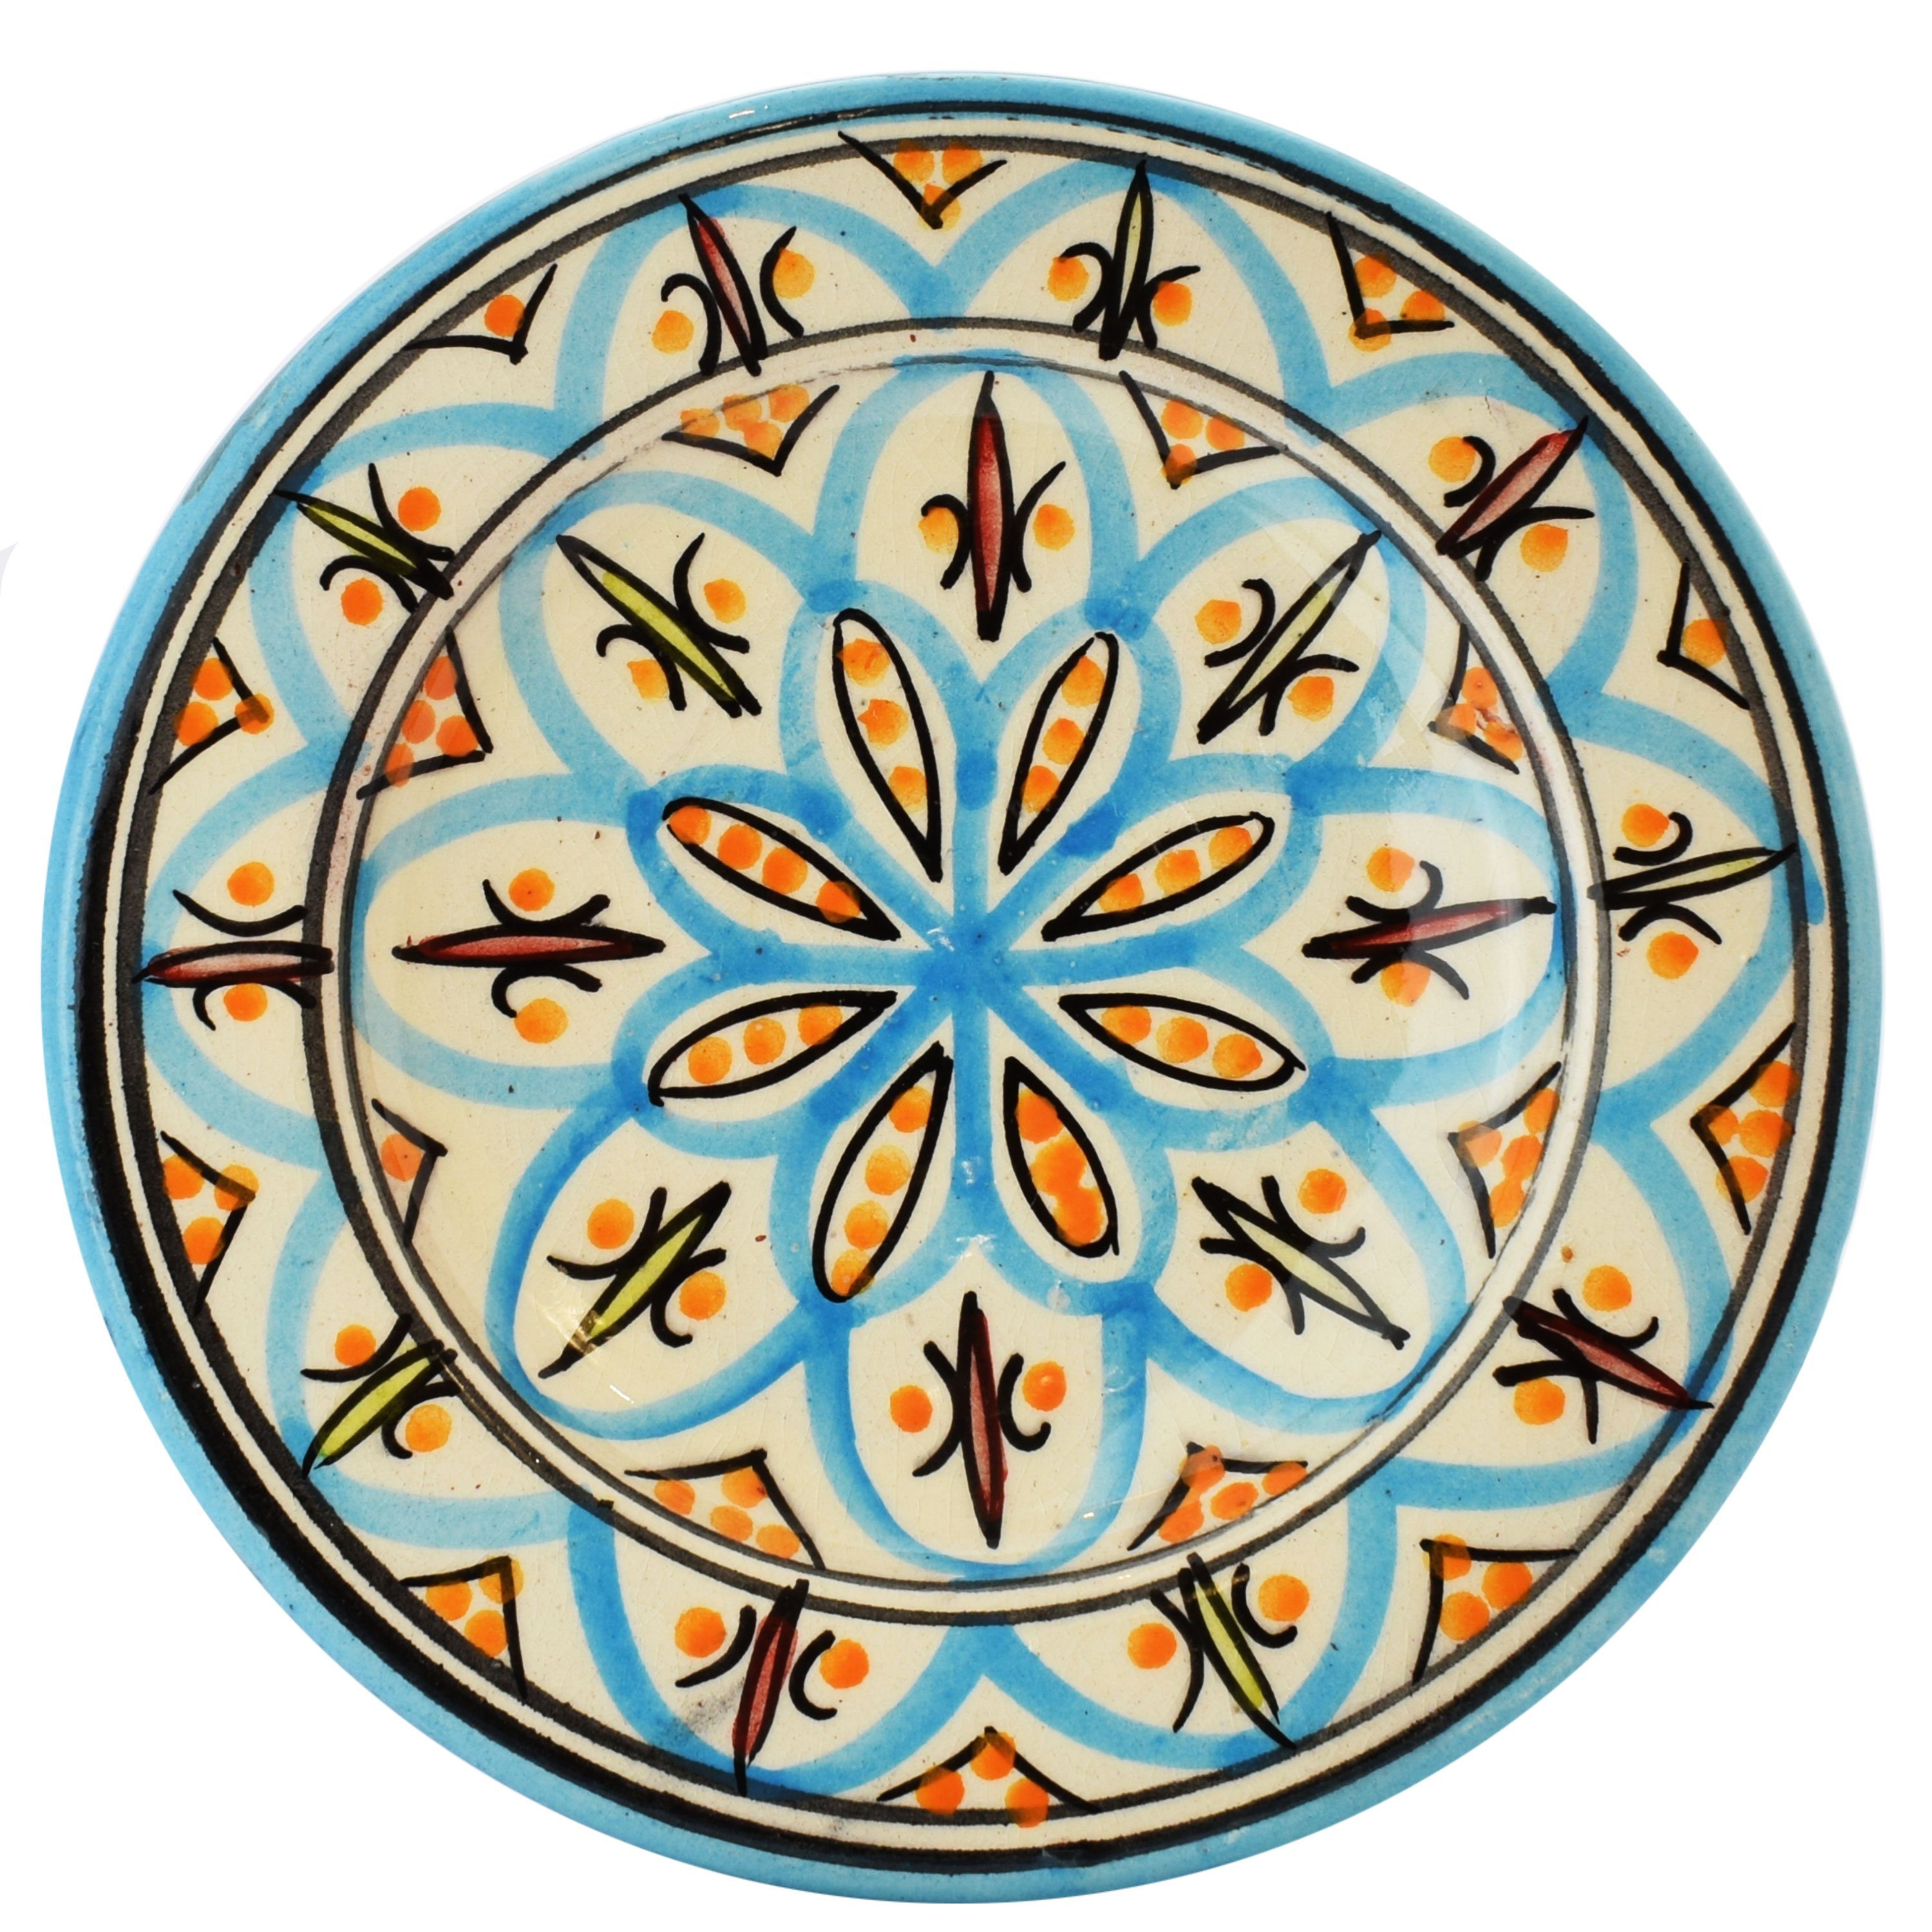 Marrakesch Orient & Mediterran Interior Dessertteller Orientalische Teller Keramikteller Rund Amin 16cm handbemalt, Handarbeit